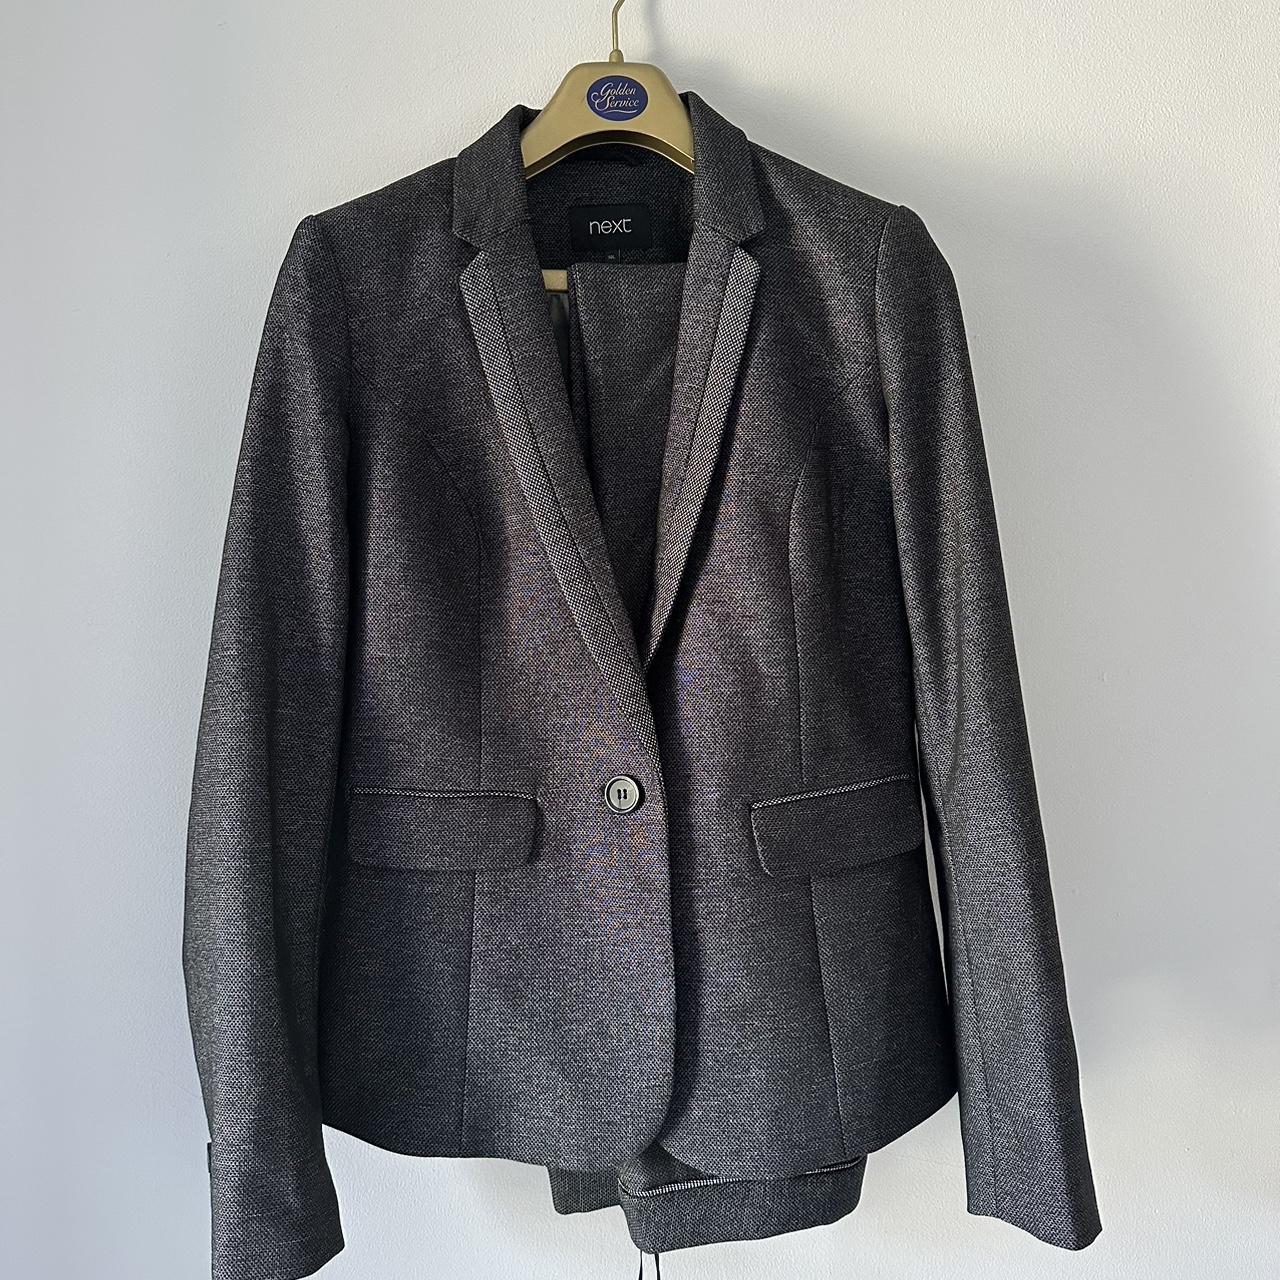 Grey Next Suit, jacket size 10 long, trousers size... - Depop